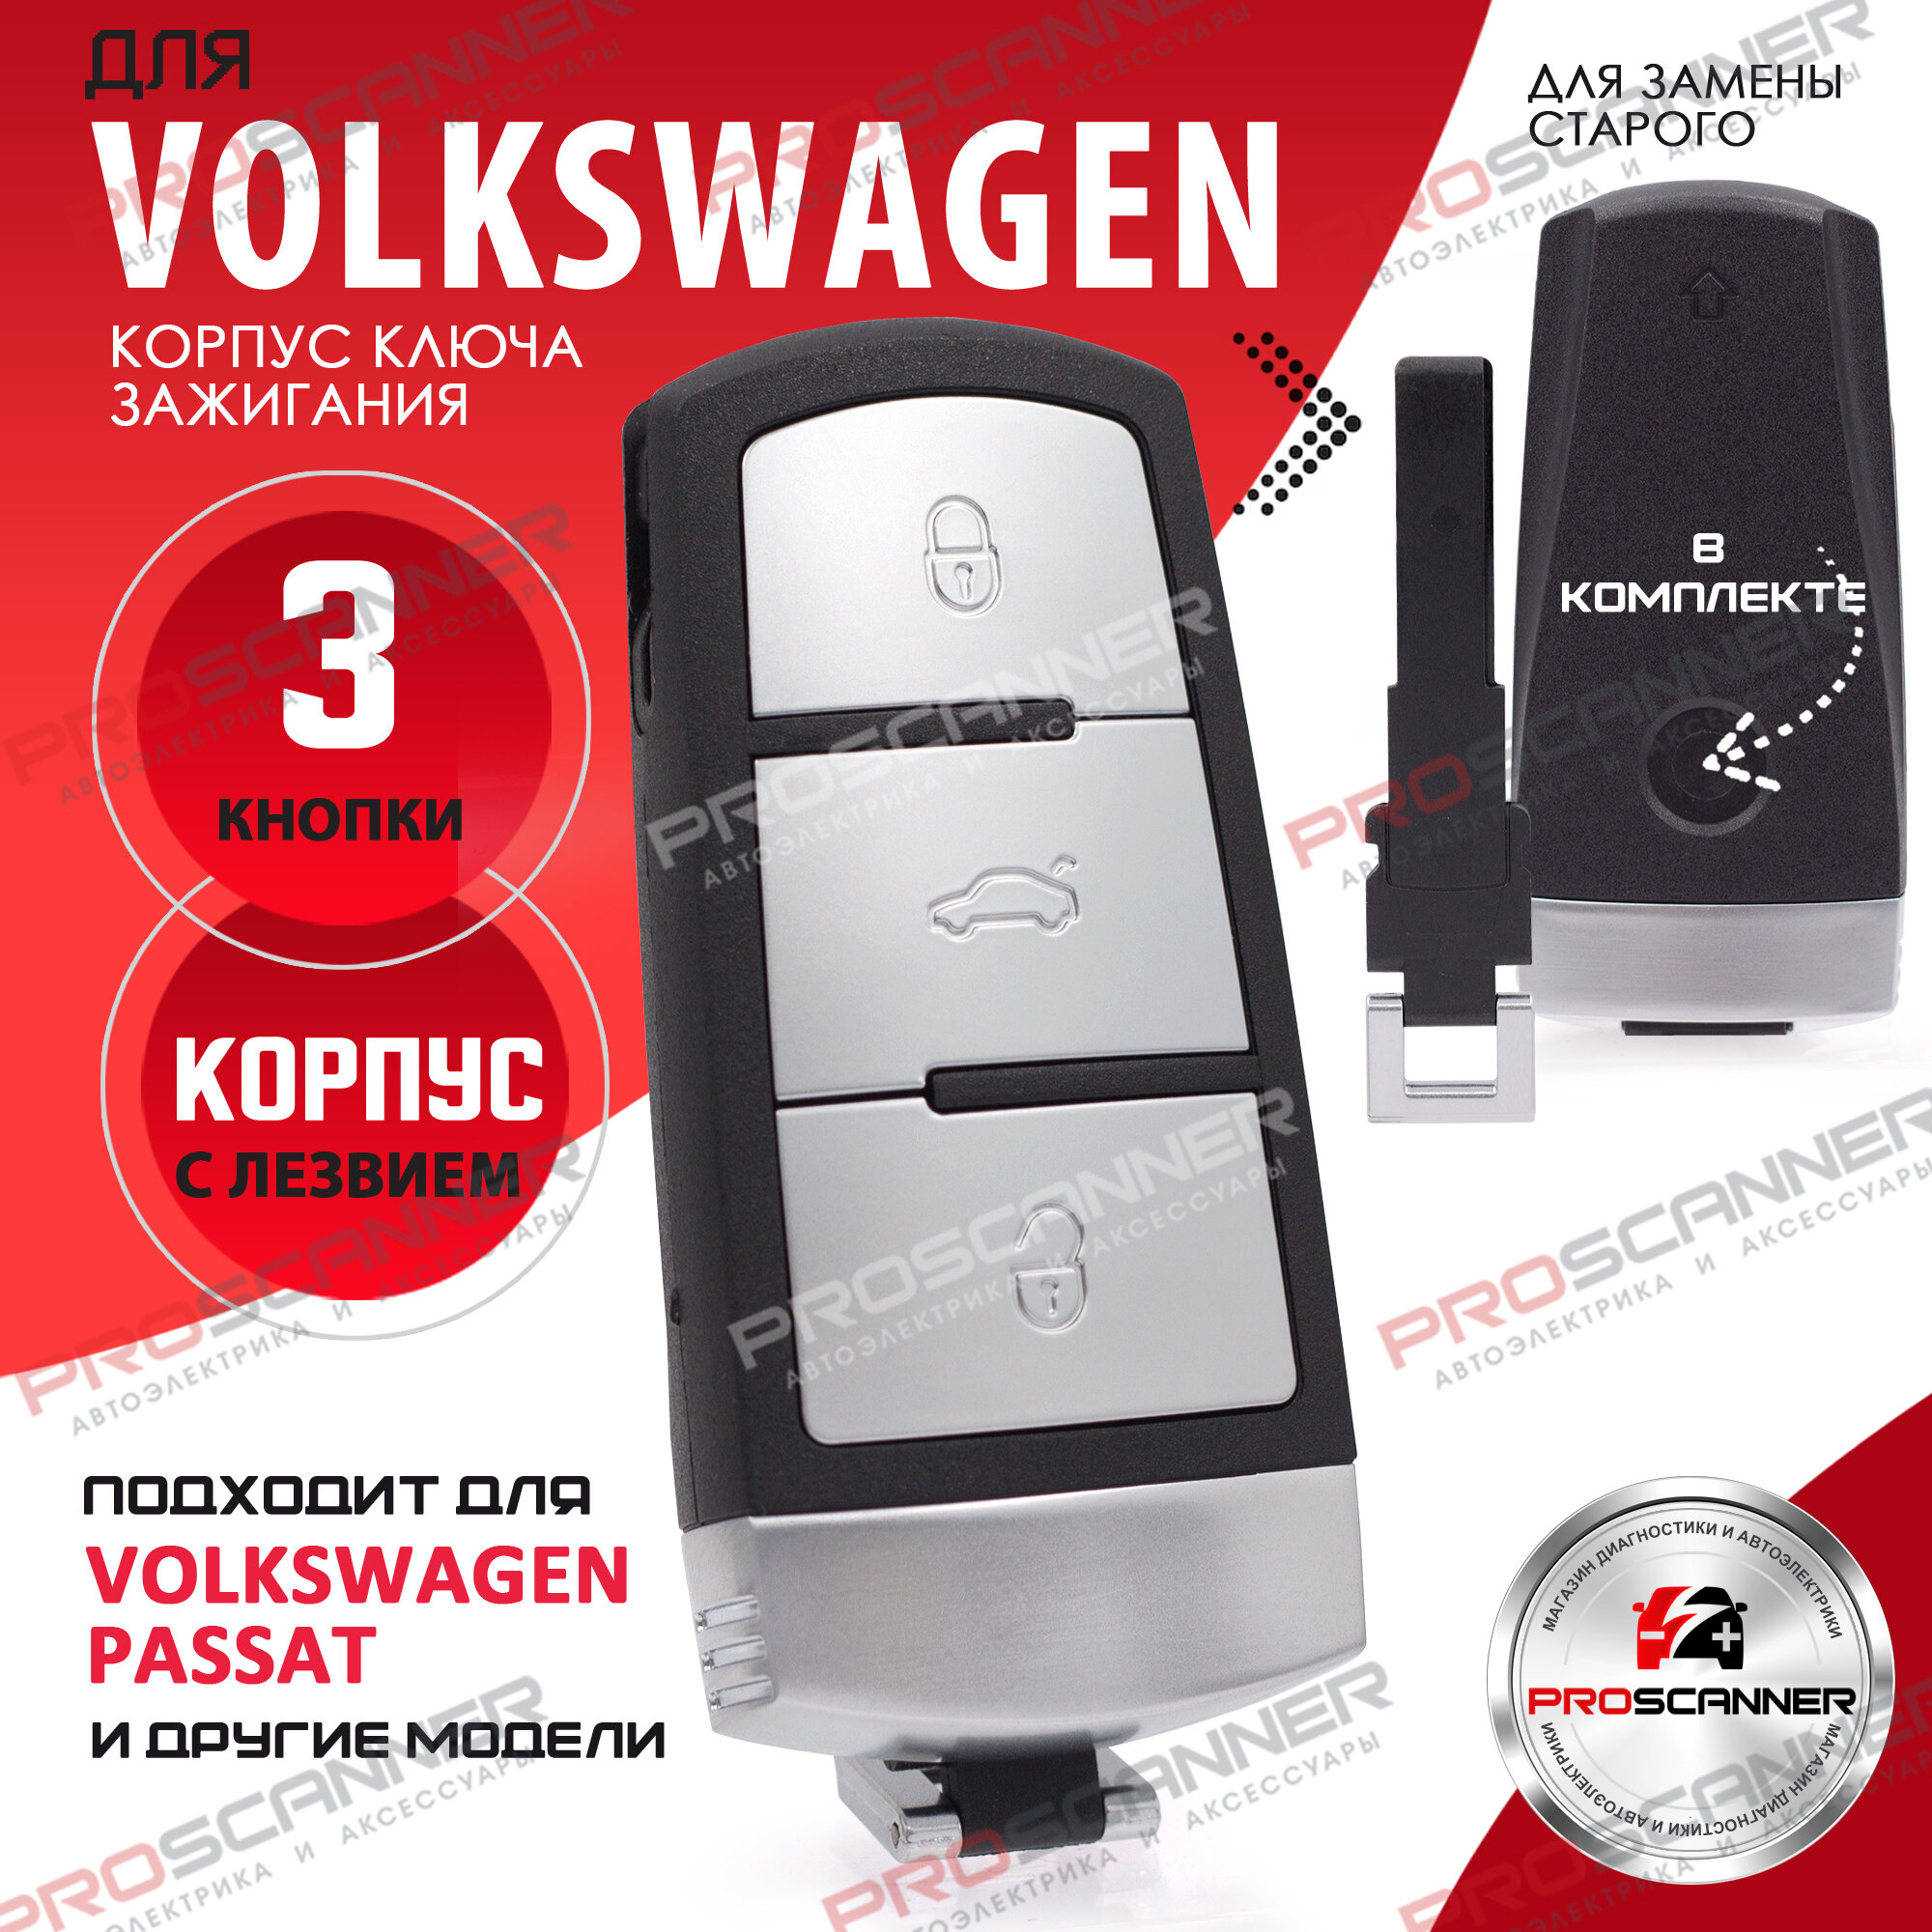 Корпус ключа зажигания для Volkswagen Passat B6 B7 CC - 1 штука 3CO 959 752 BA (3 кнопочный ключ с лезвием)